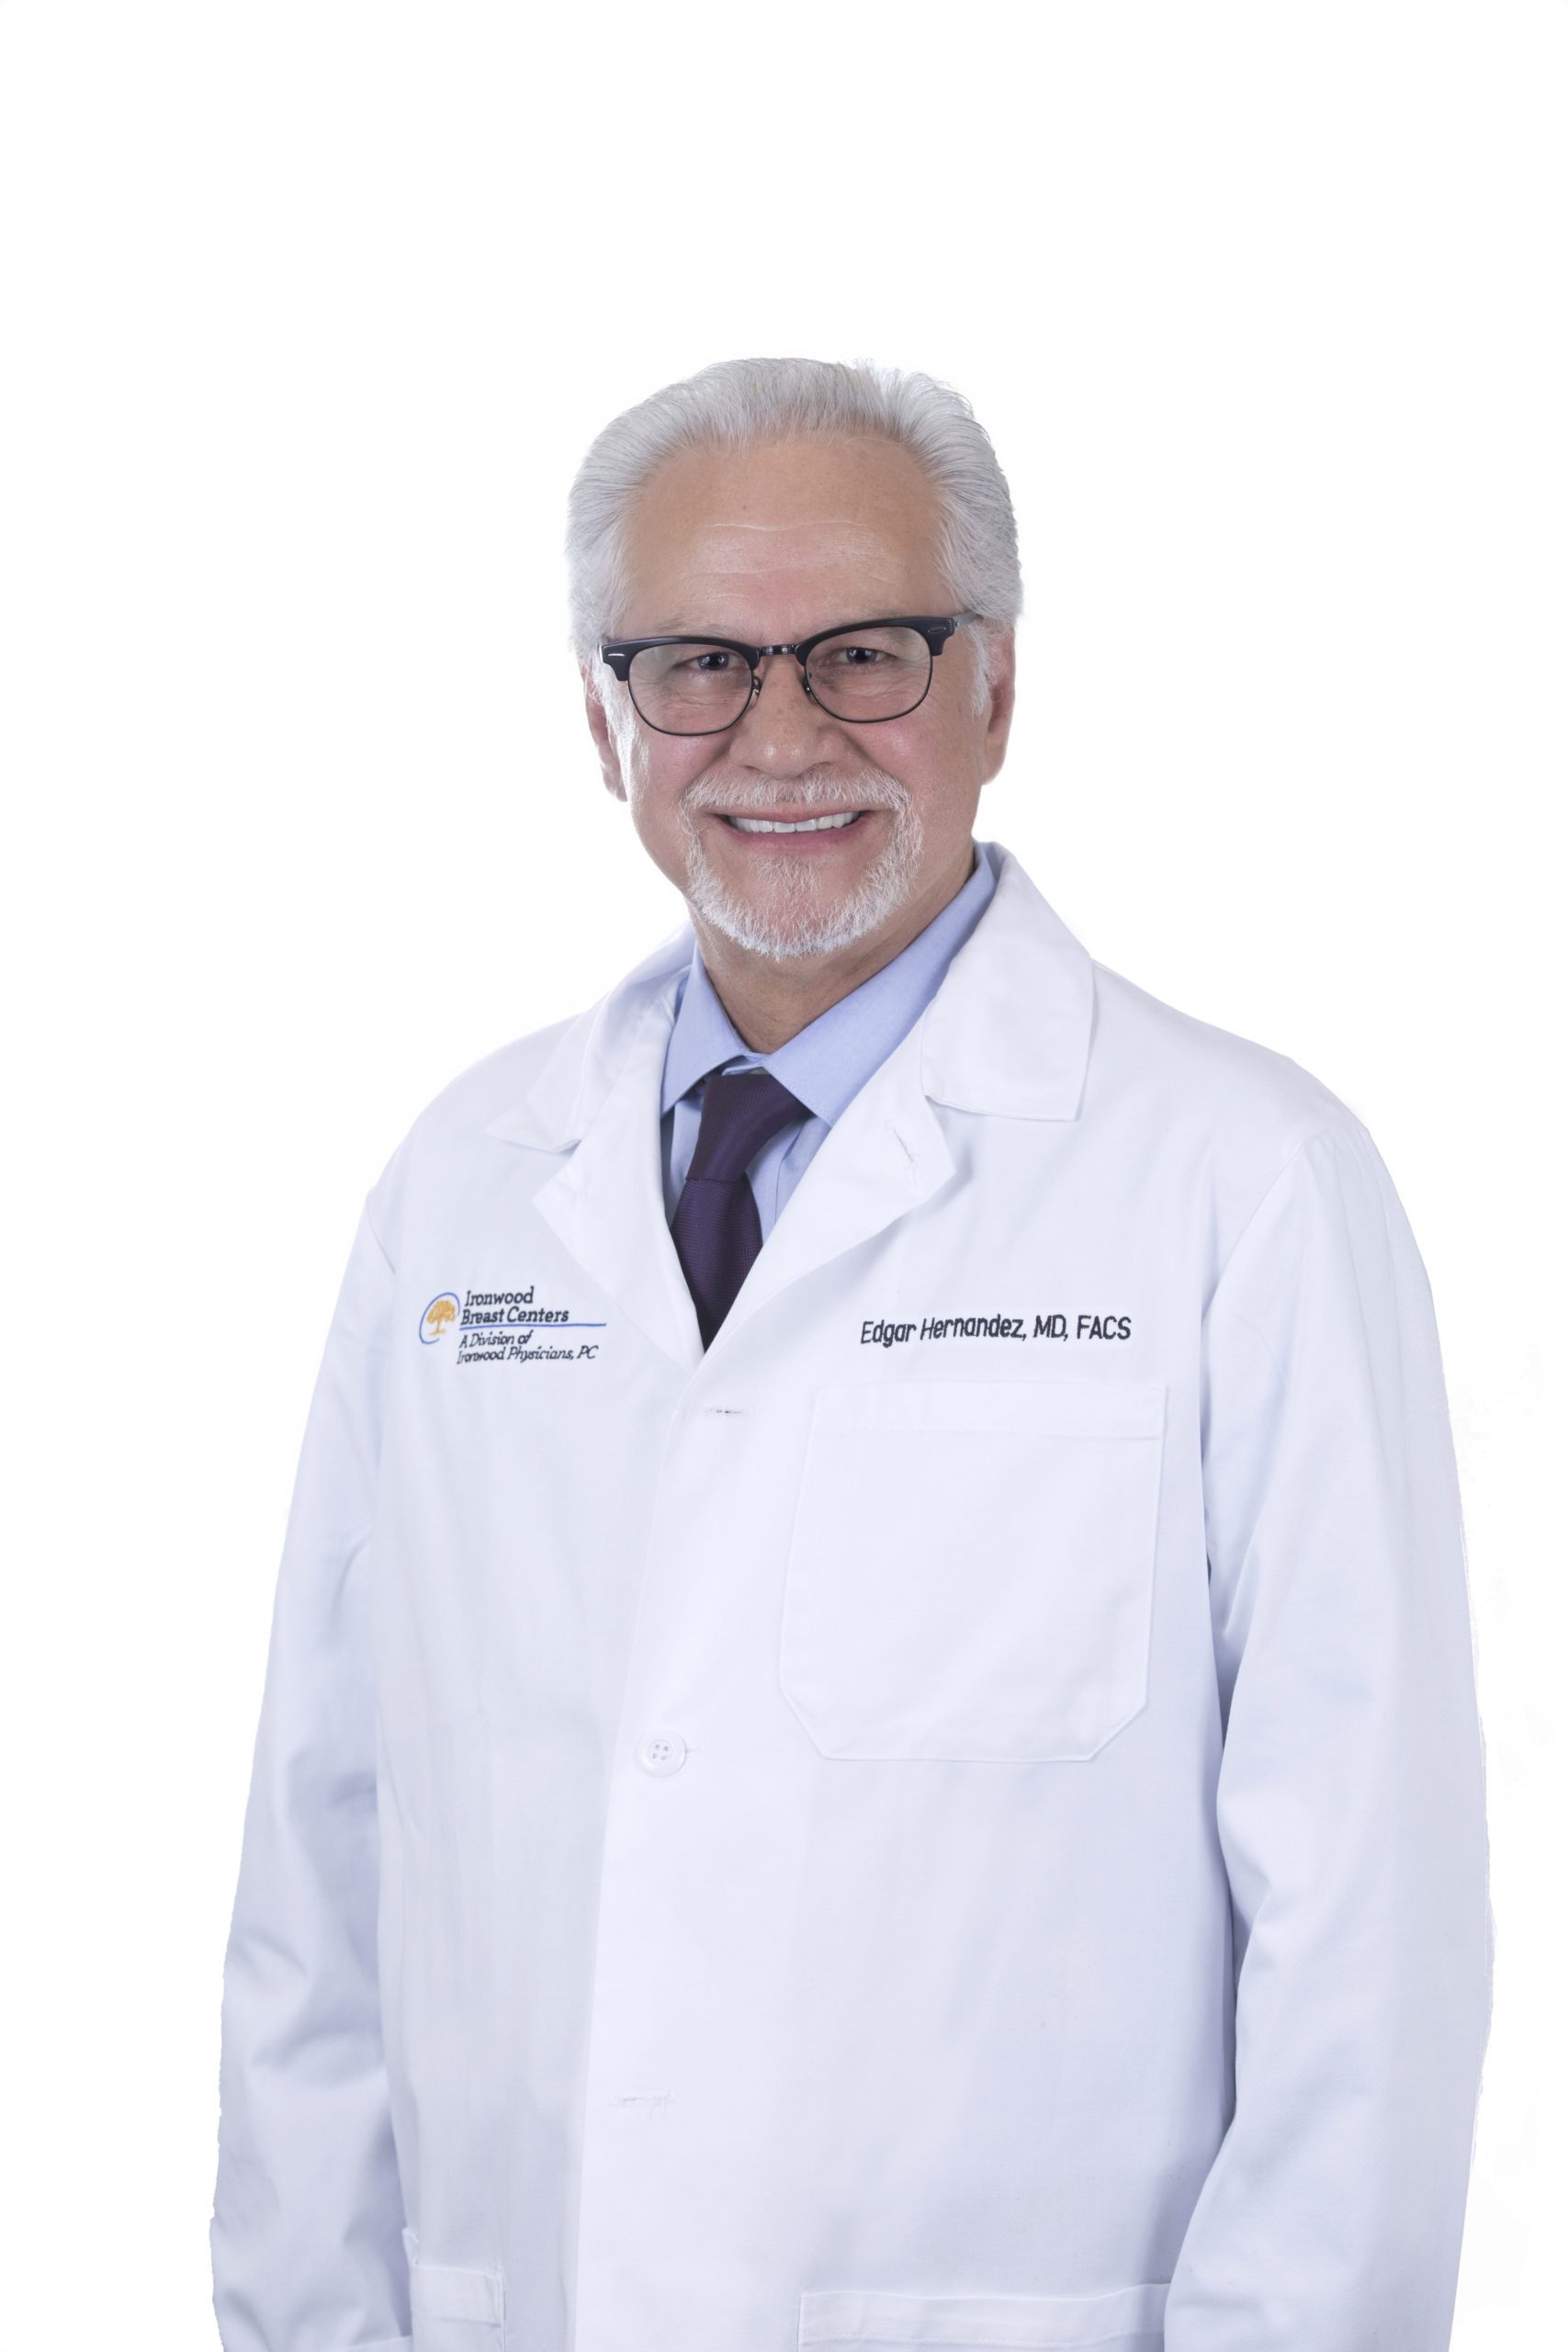 Edgar Hernandez, MD, MS, FACS